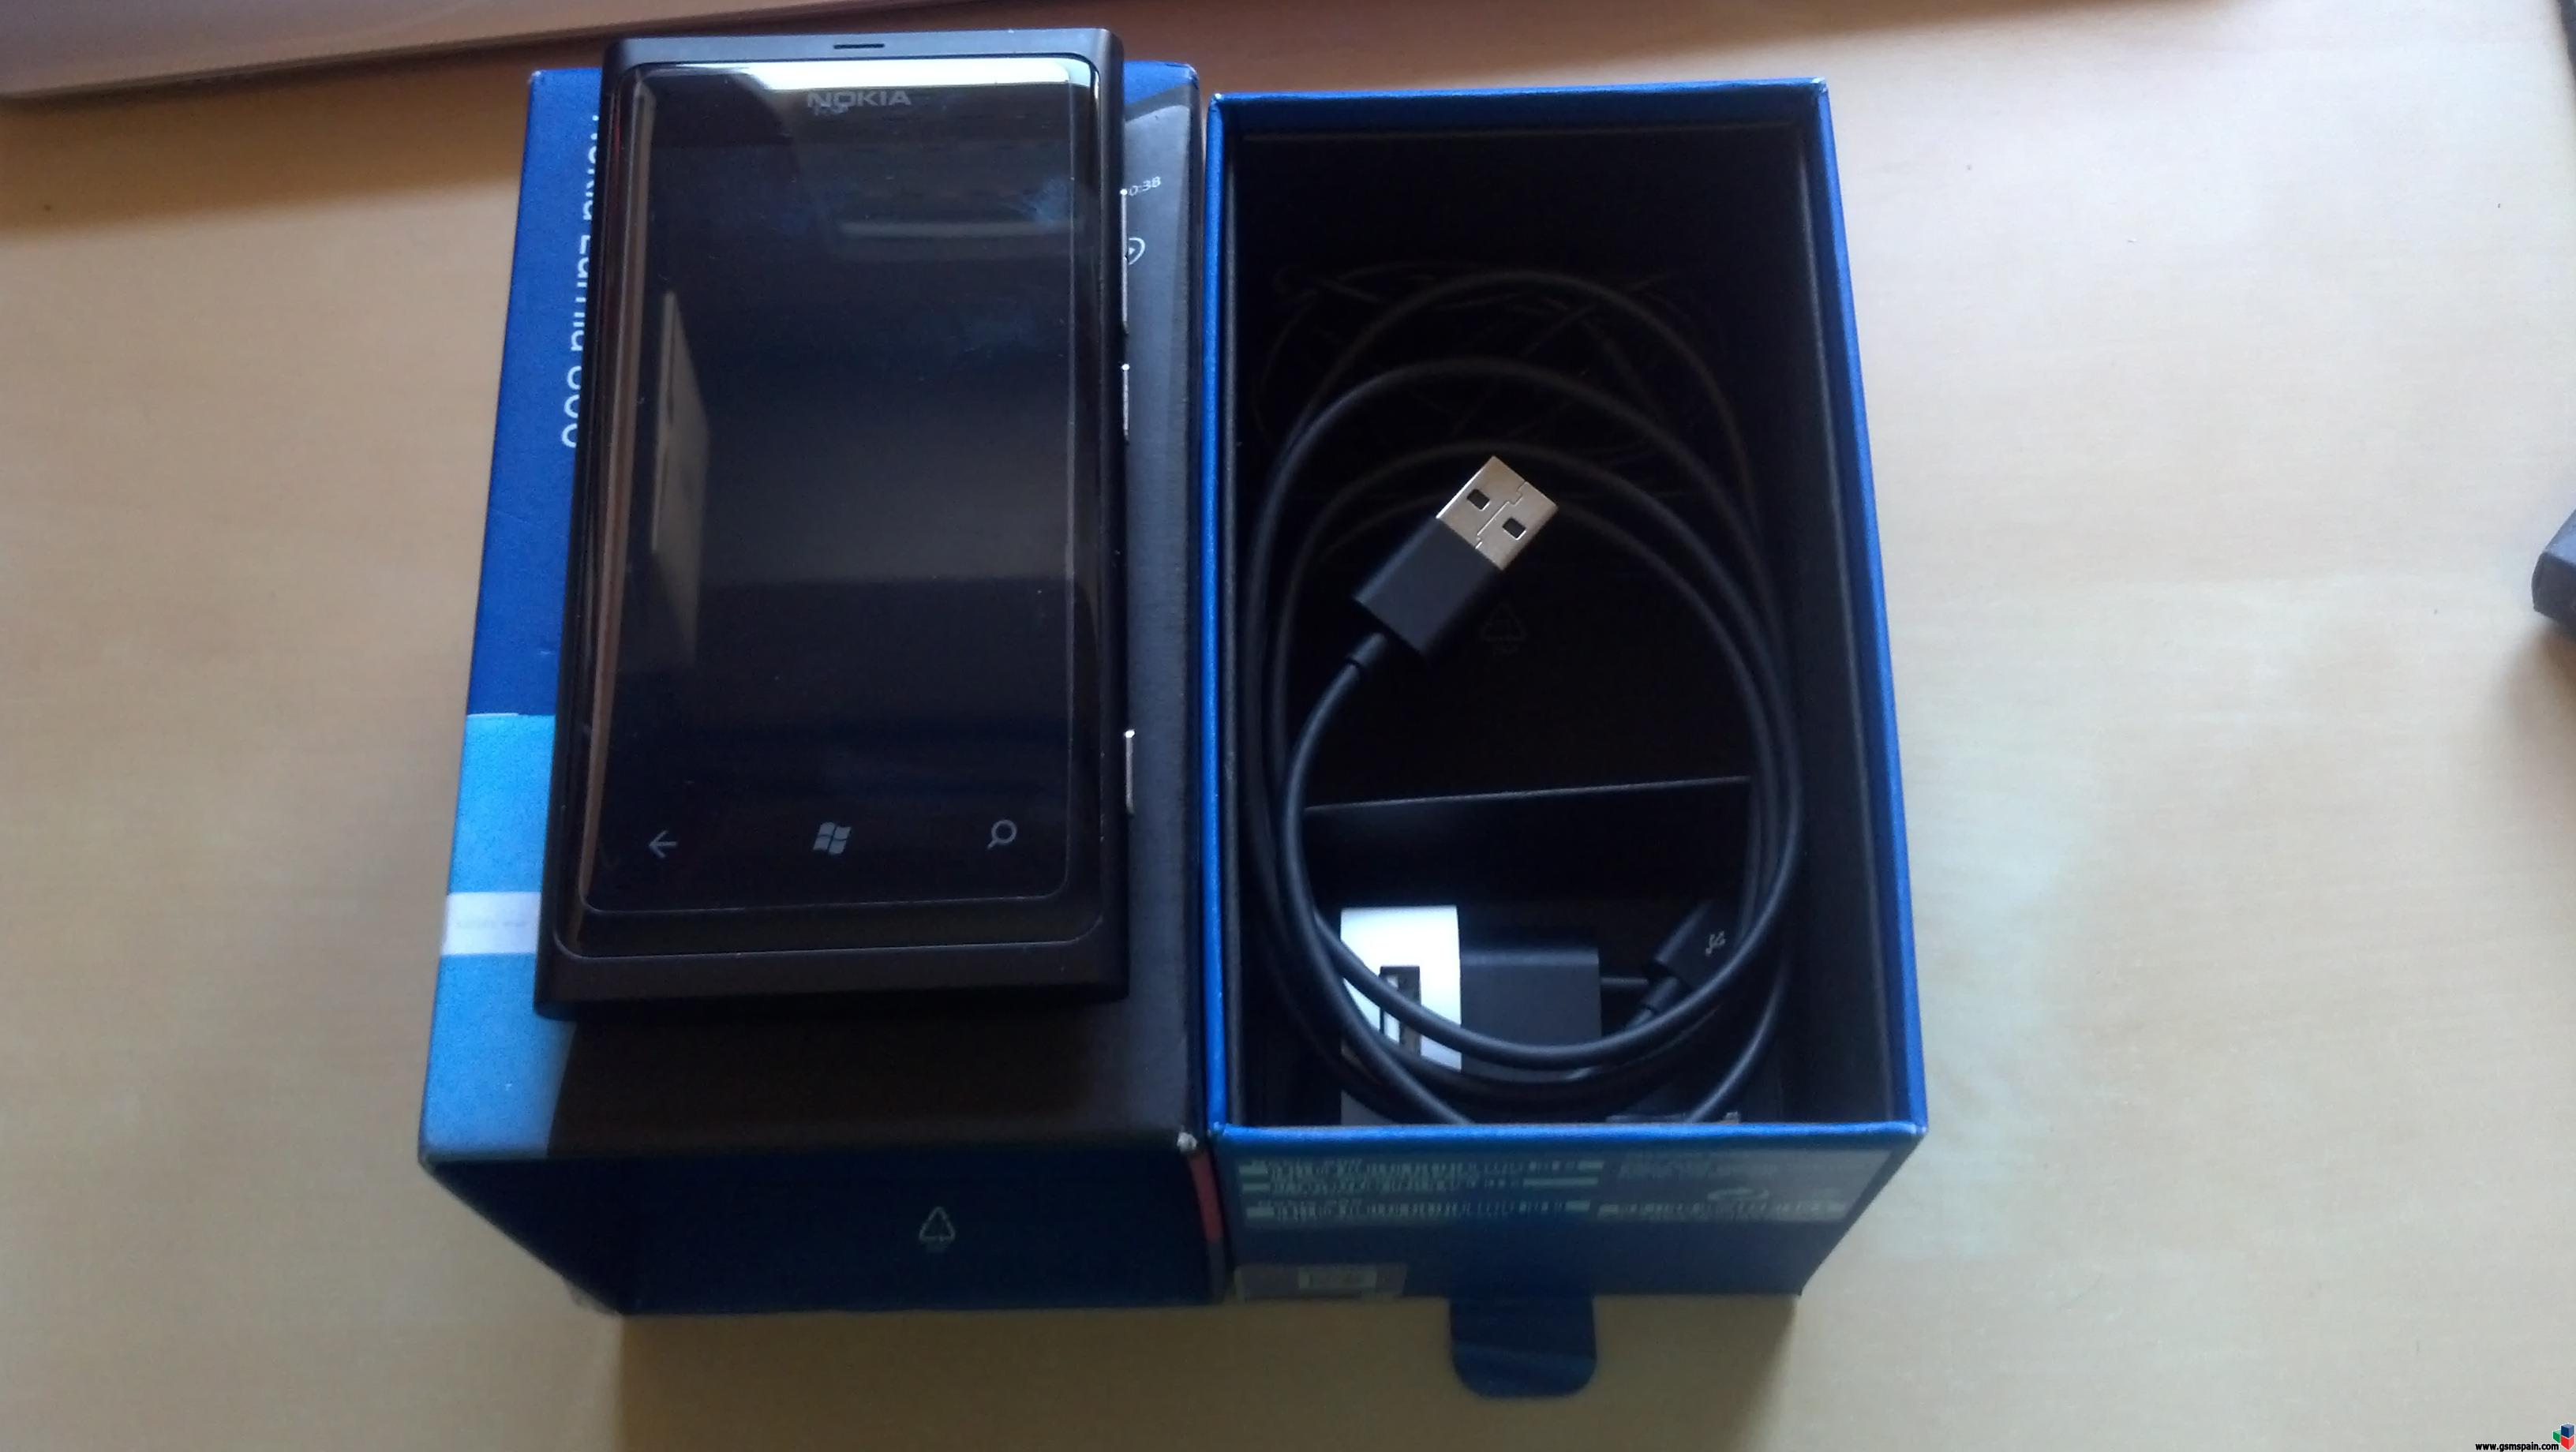 [VENDO] Lumia 800 negro vodafone